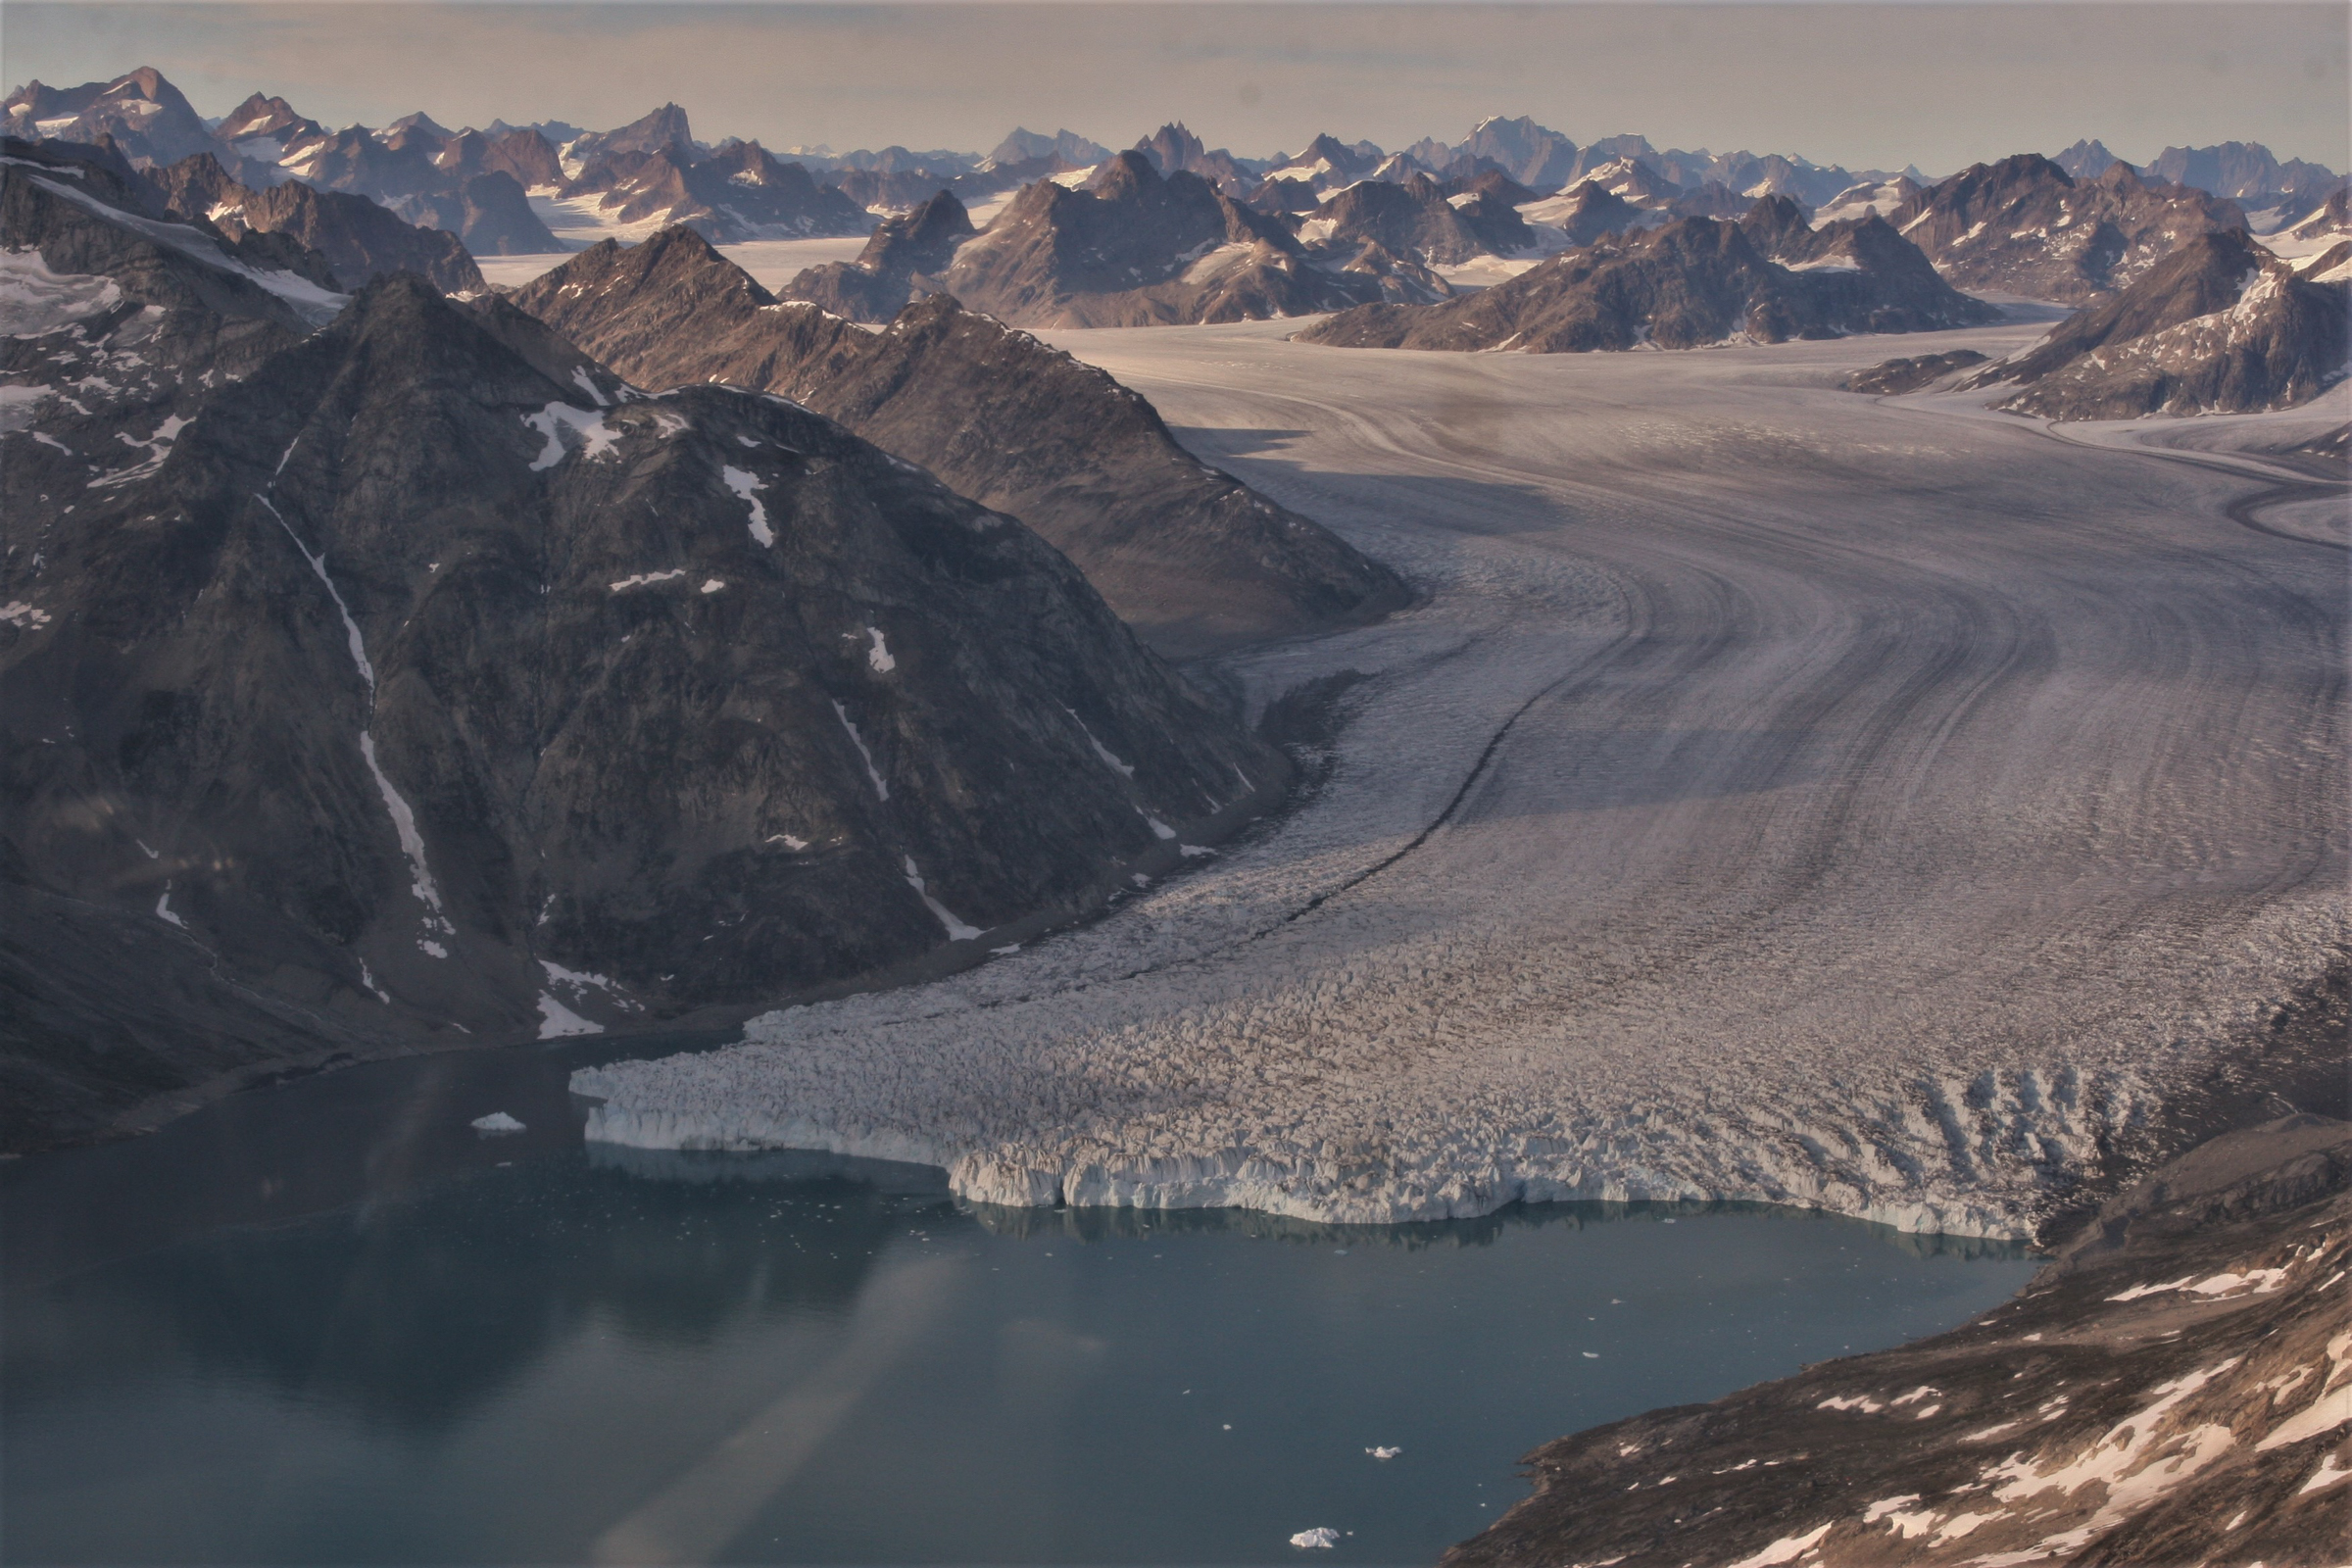 Birds eye view over Knud Rasmussen Glacier. Photo by Lars Anker Moeller - Visit East Greenland